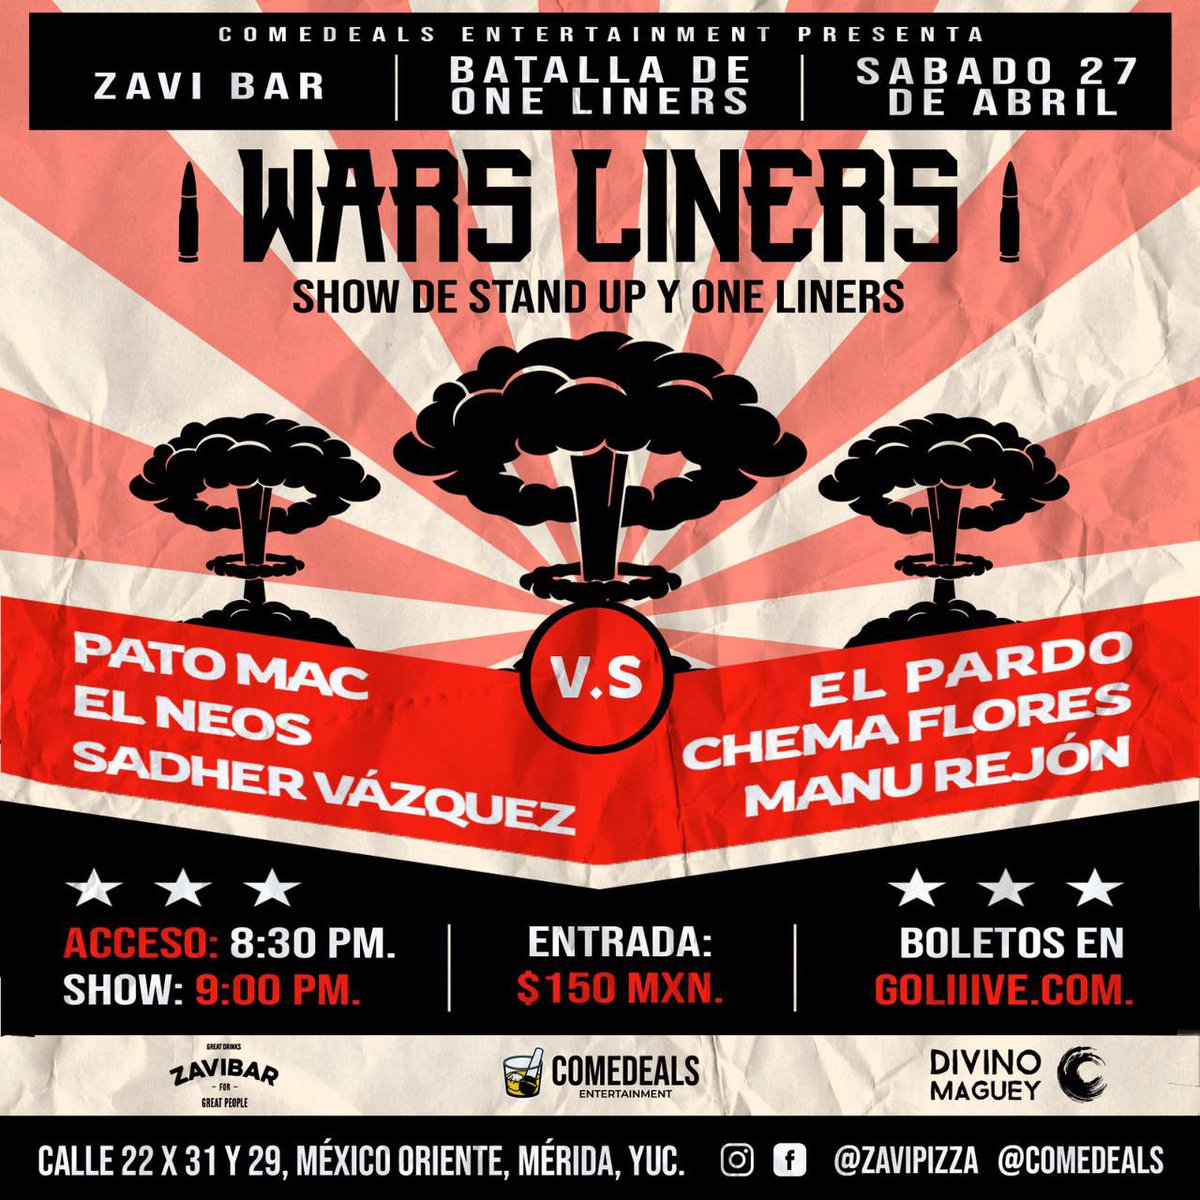 HOY sábado 27 de abril en ZAVI BAR,  Colonia Mexico #Merida hay show de #Oneliners y hay boletos! 

goliiive.com/wars-liners